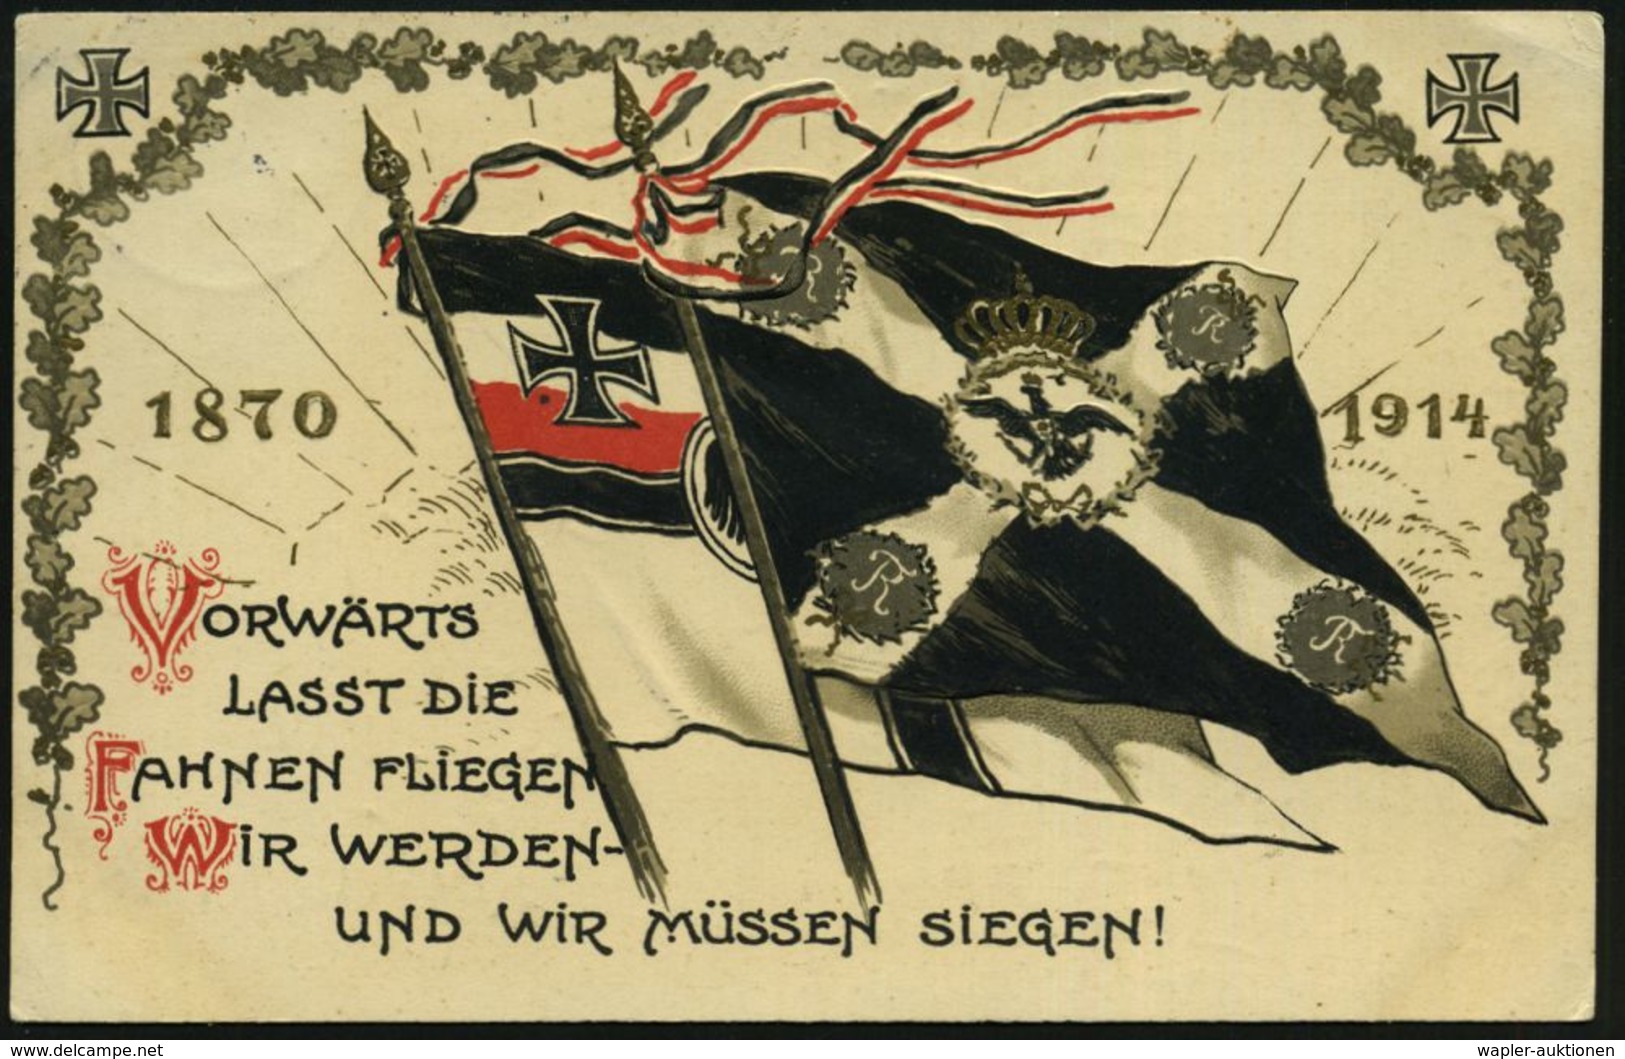 Berlin SW 19 1914 (13.12.) Color-Litho-Präge-Propaganda-Ak.: 1870 1914 VORWÄRTS LASST DIE FAHNEN FLIEGEN.. (preuss. U. R - WO1